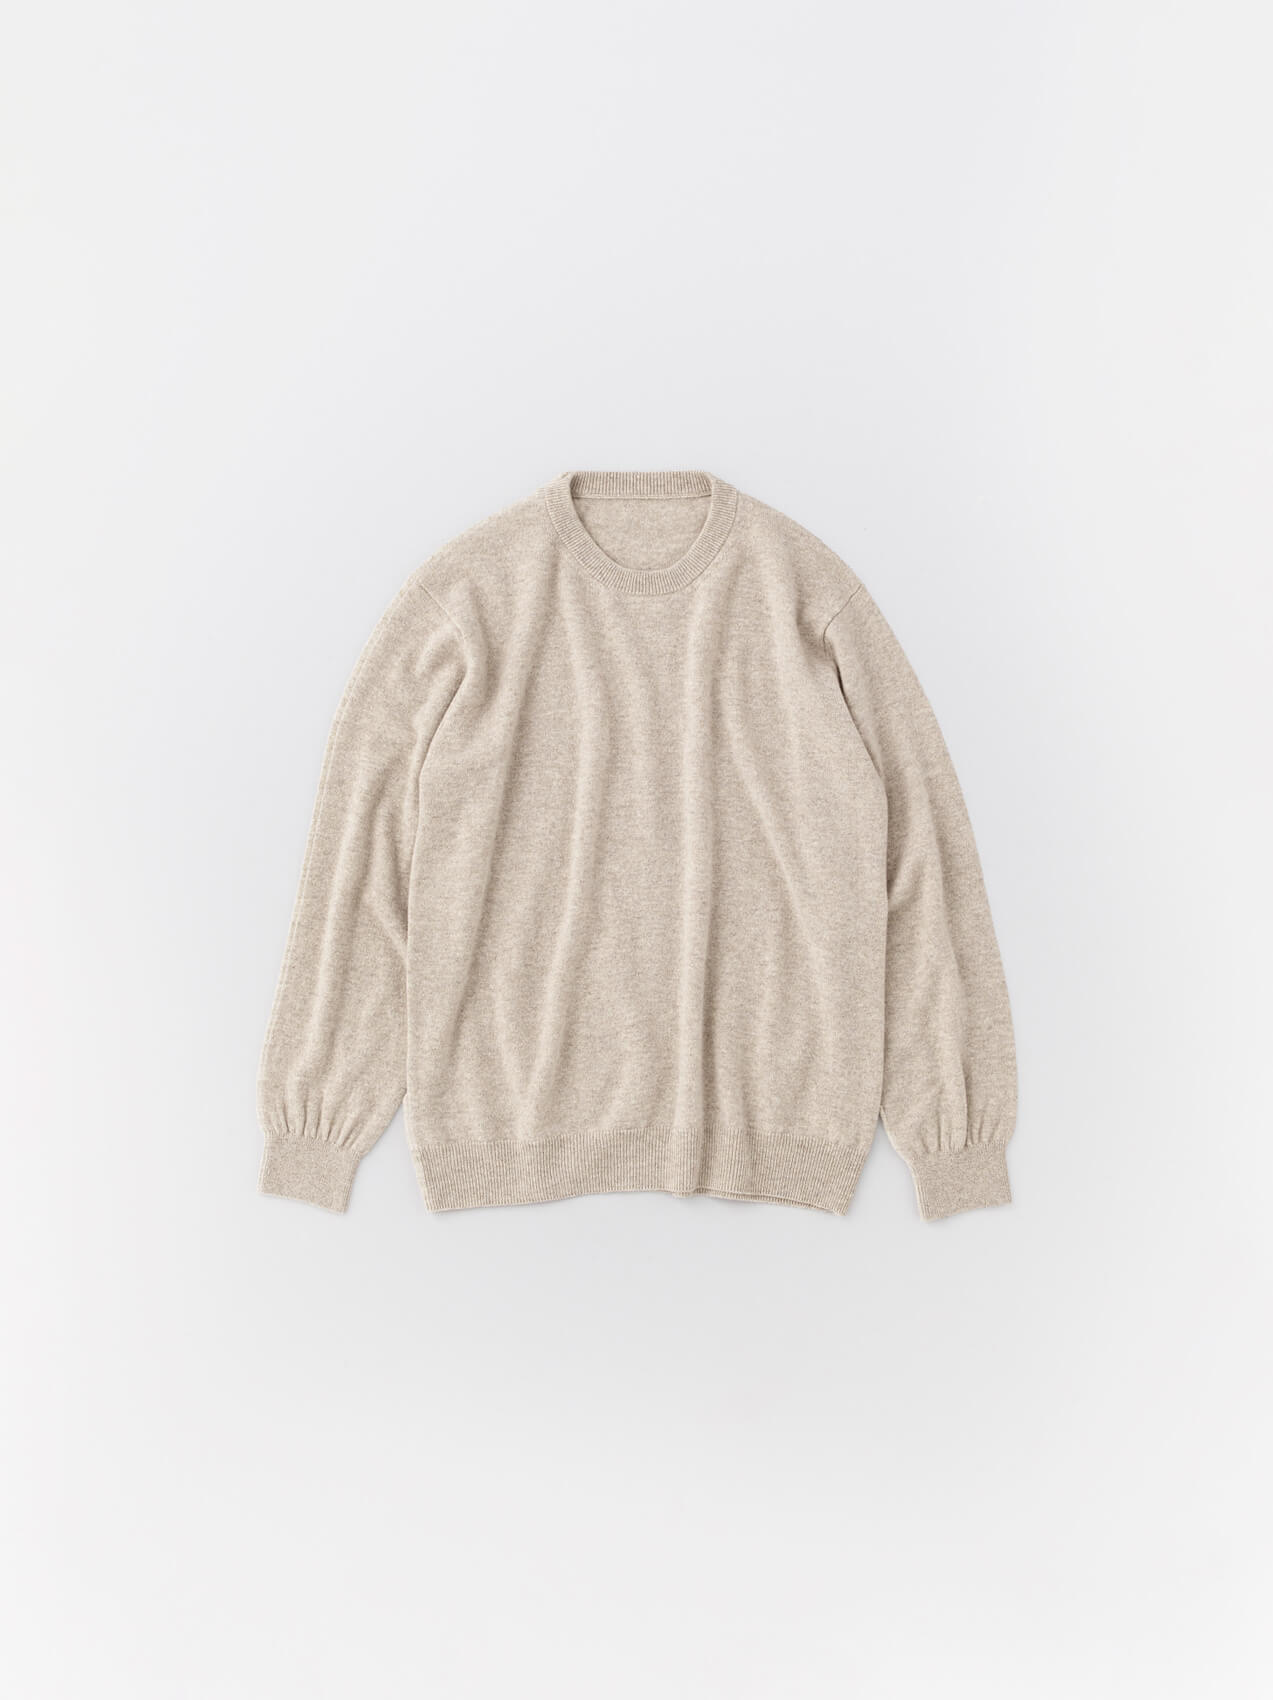 Simple sweater crew neck